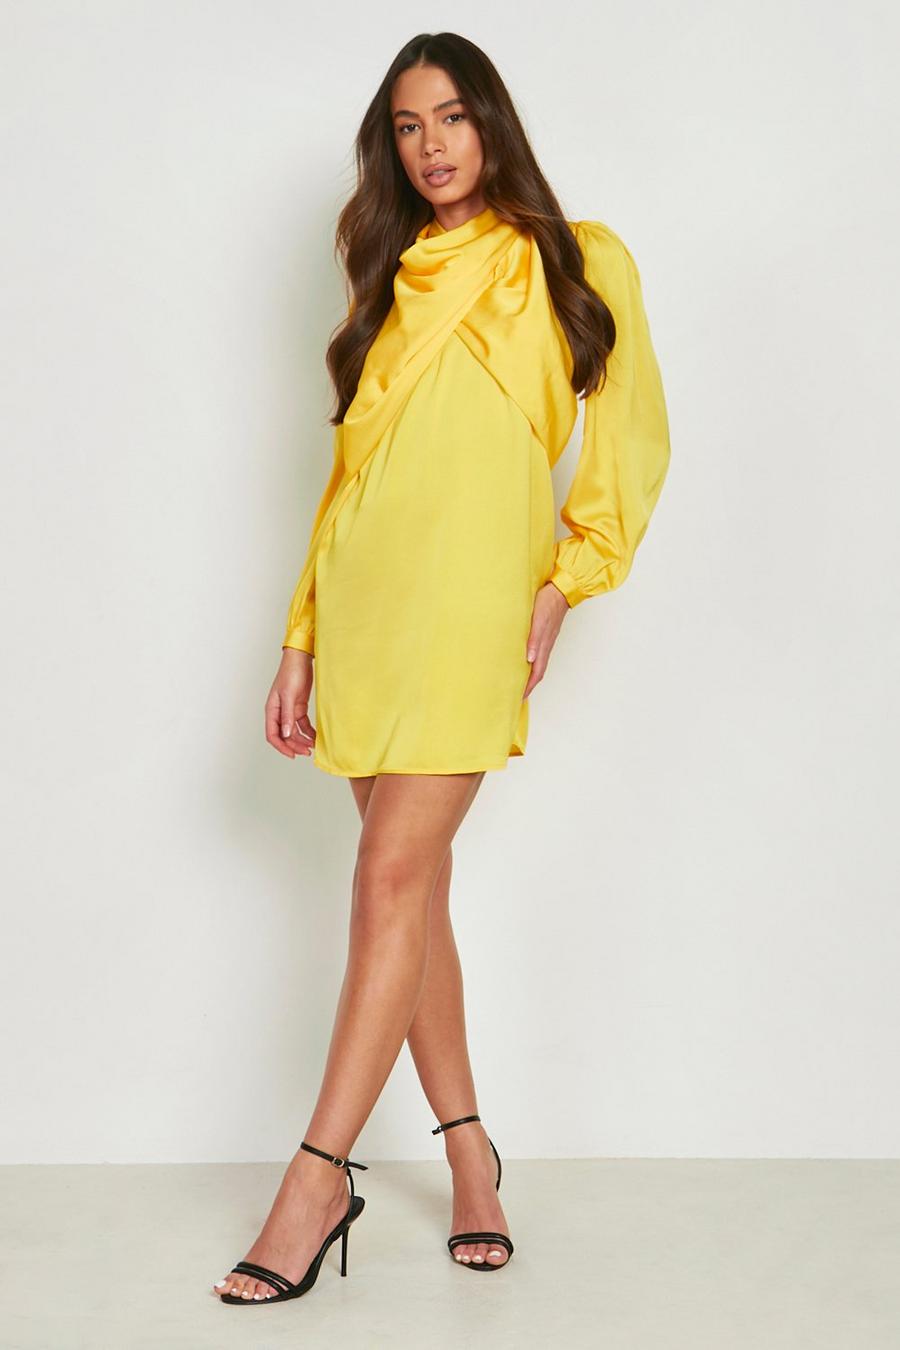 צהוב amarillo שמלת שיפט מעטפת מסאטן עם שרוולי בלון